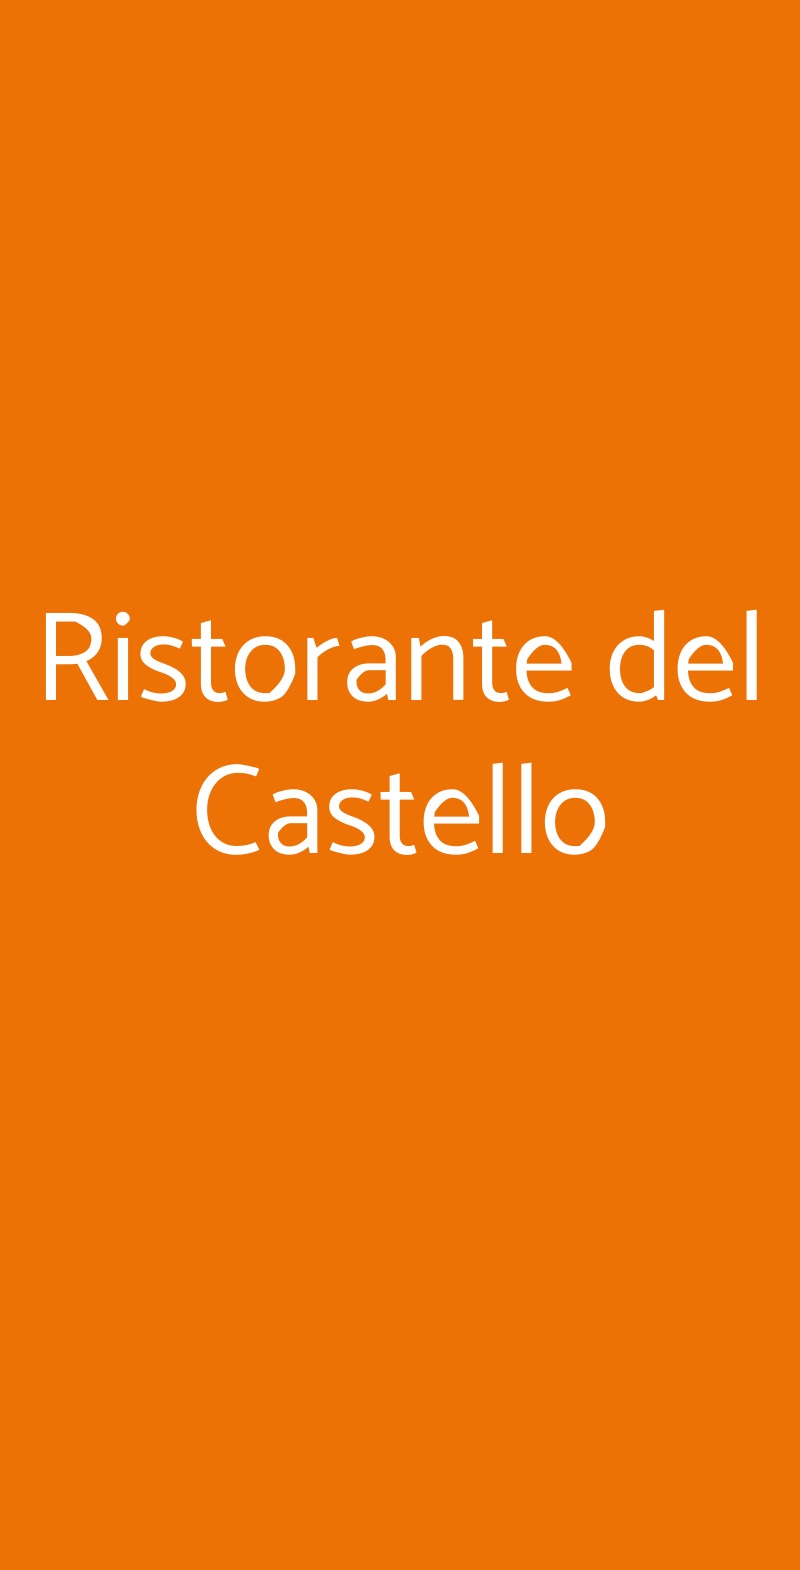 Ristorante del Castello Pavarolo menù 1 pagina